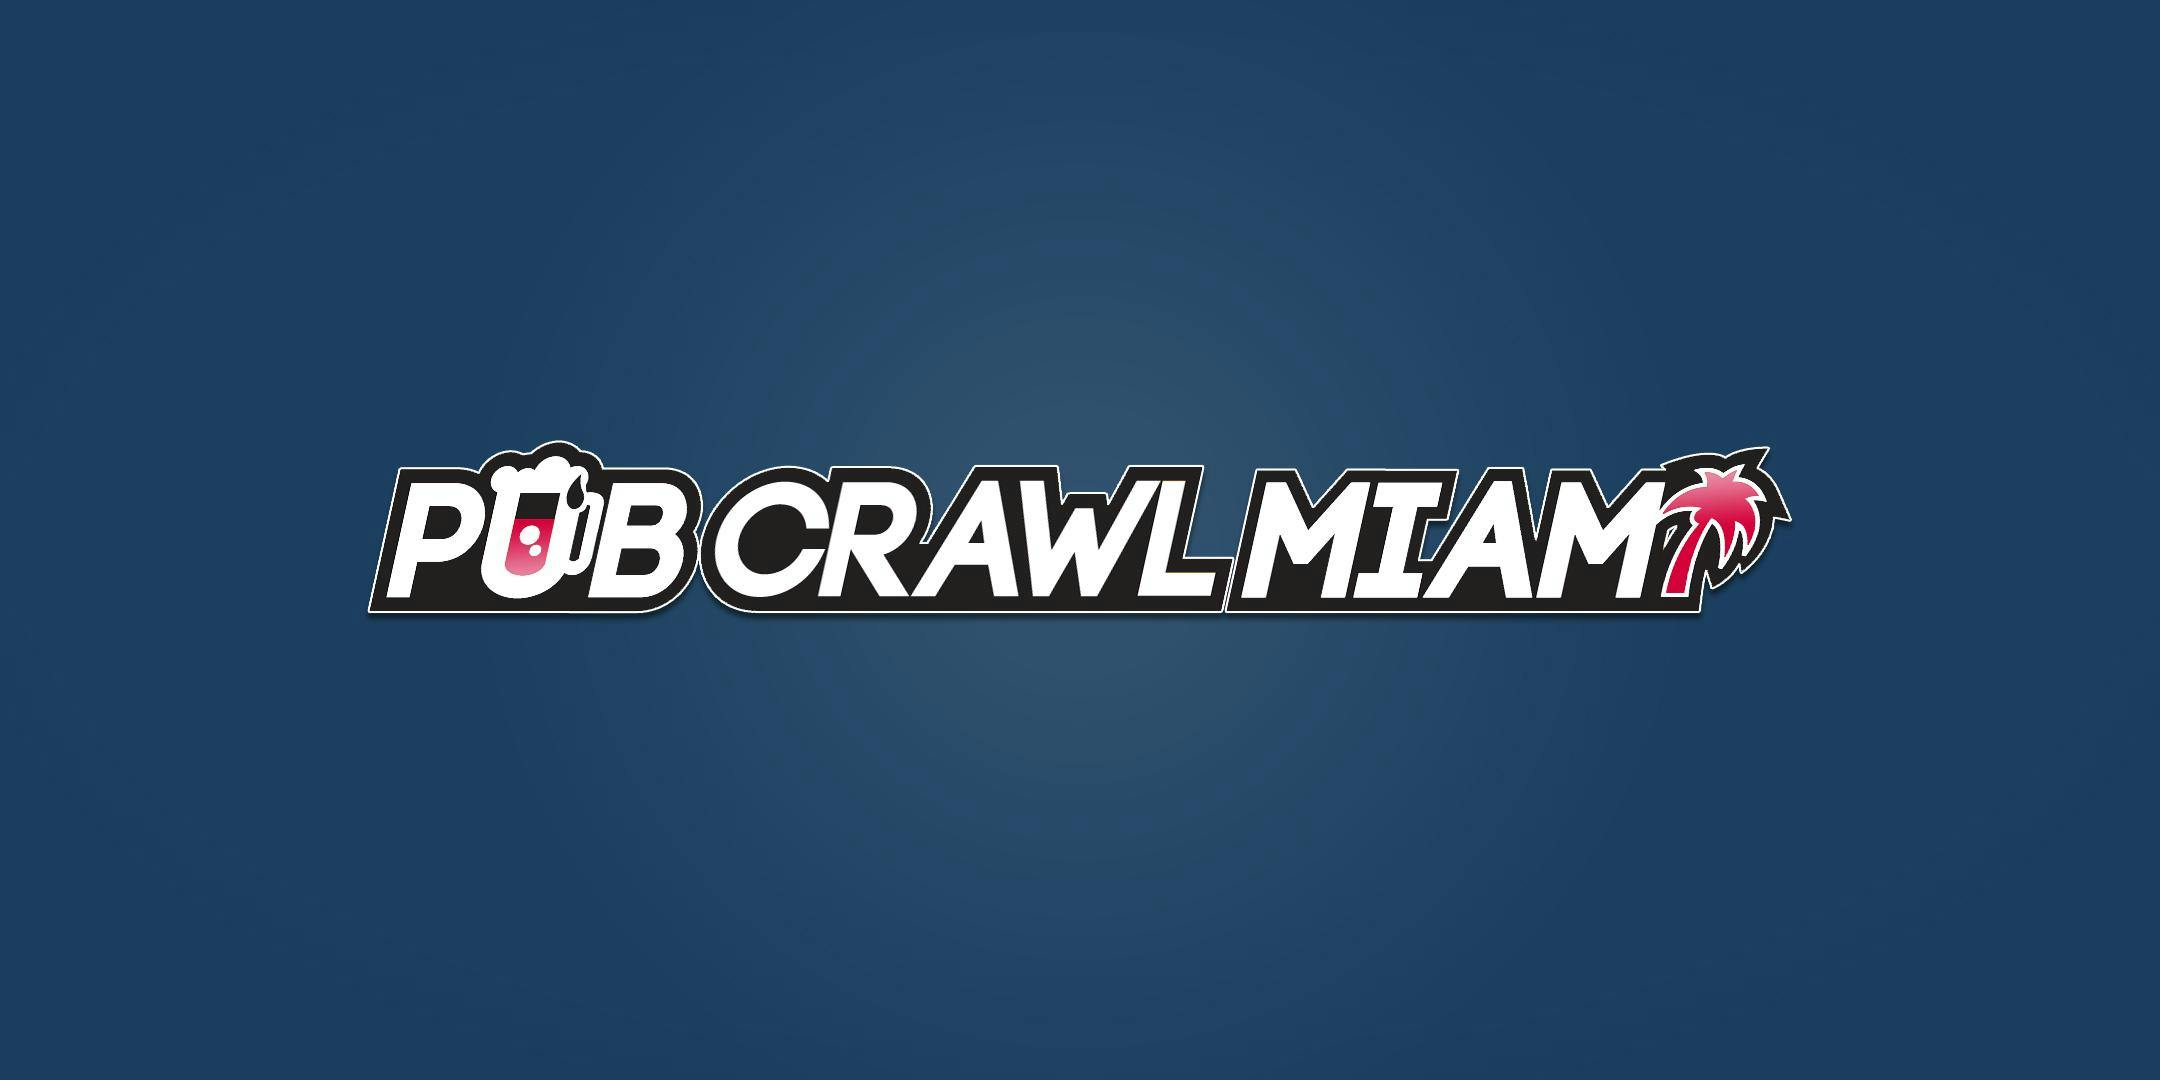 SOUTH BEACH CLUB CRAWL